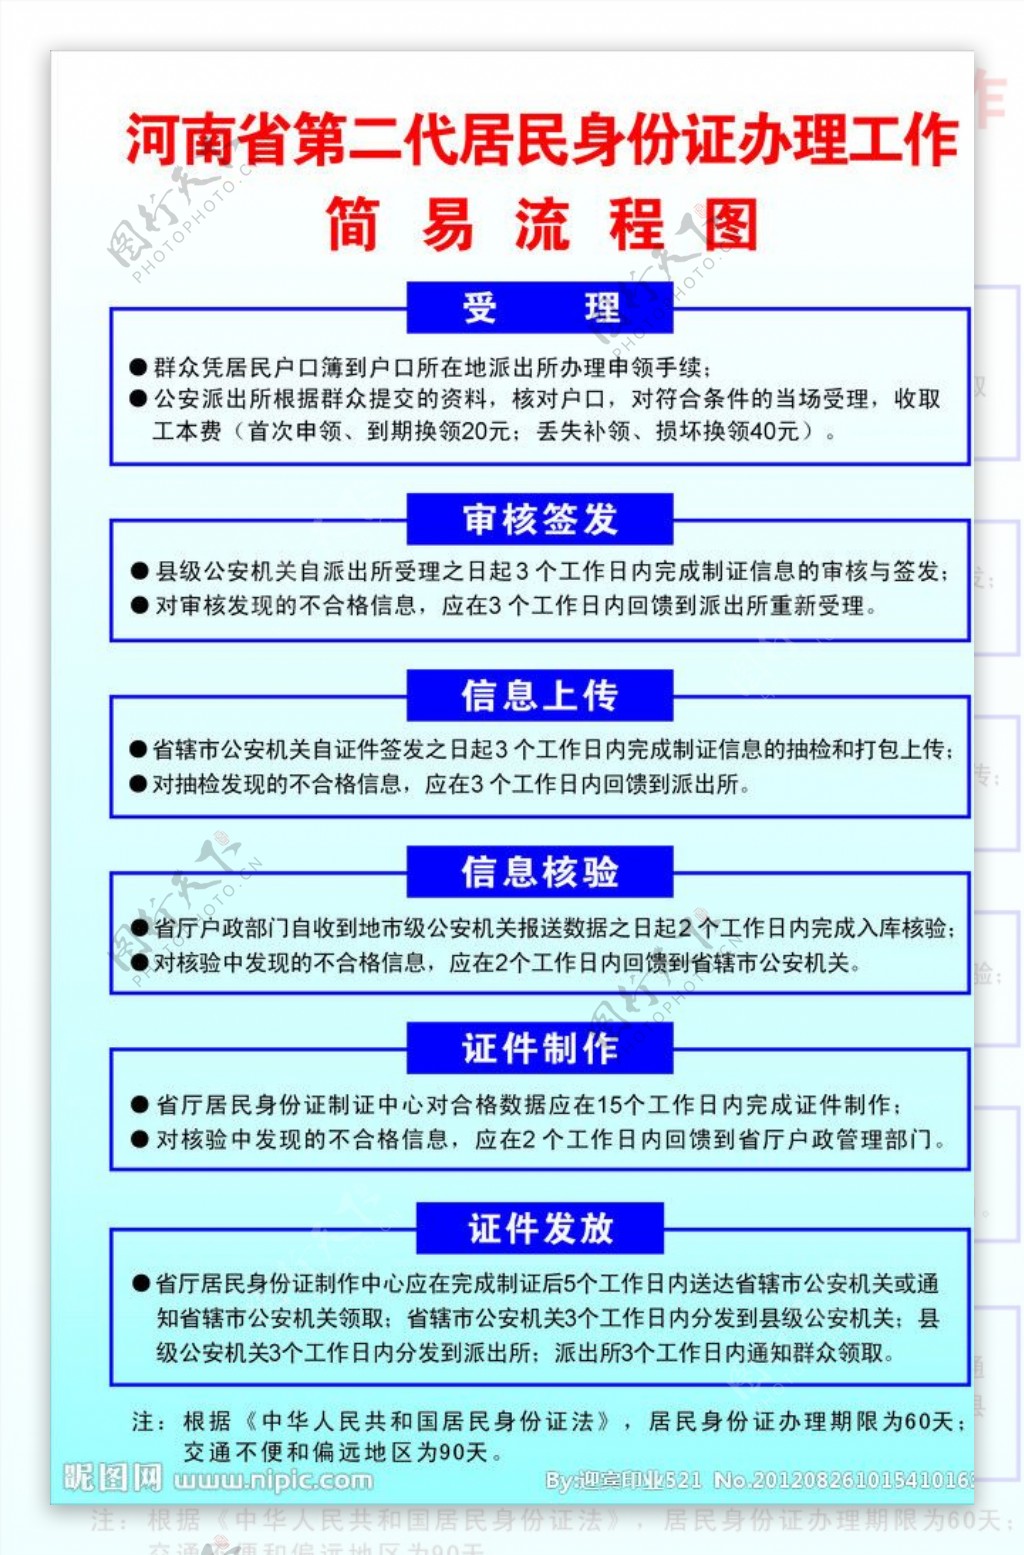 河南省第二代居民身份证办理流程图图片